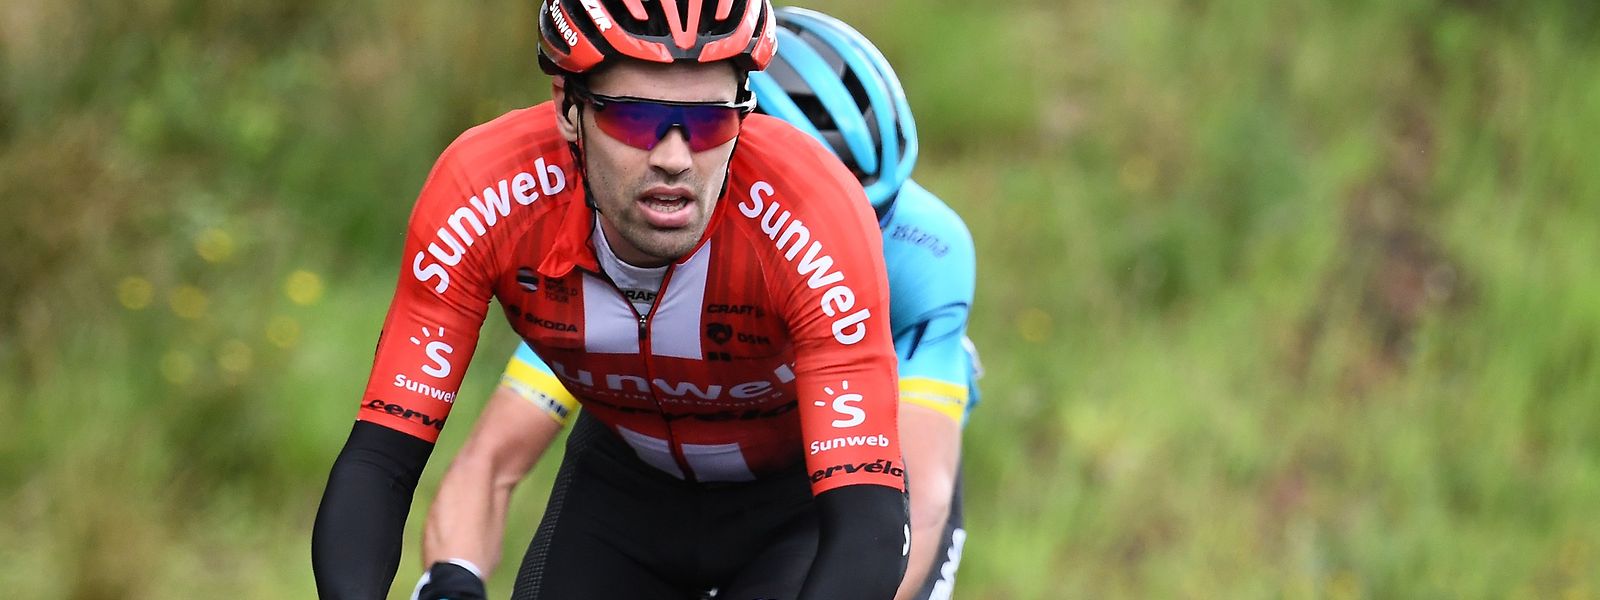 Tom Dumoulin hatte im vergangenen Jahr den zweiten Rang bei der Tour de France belegt.